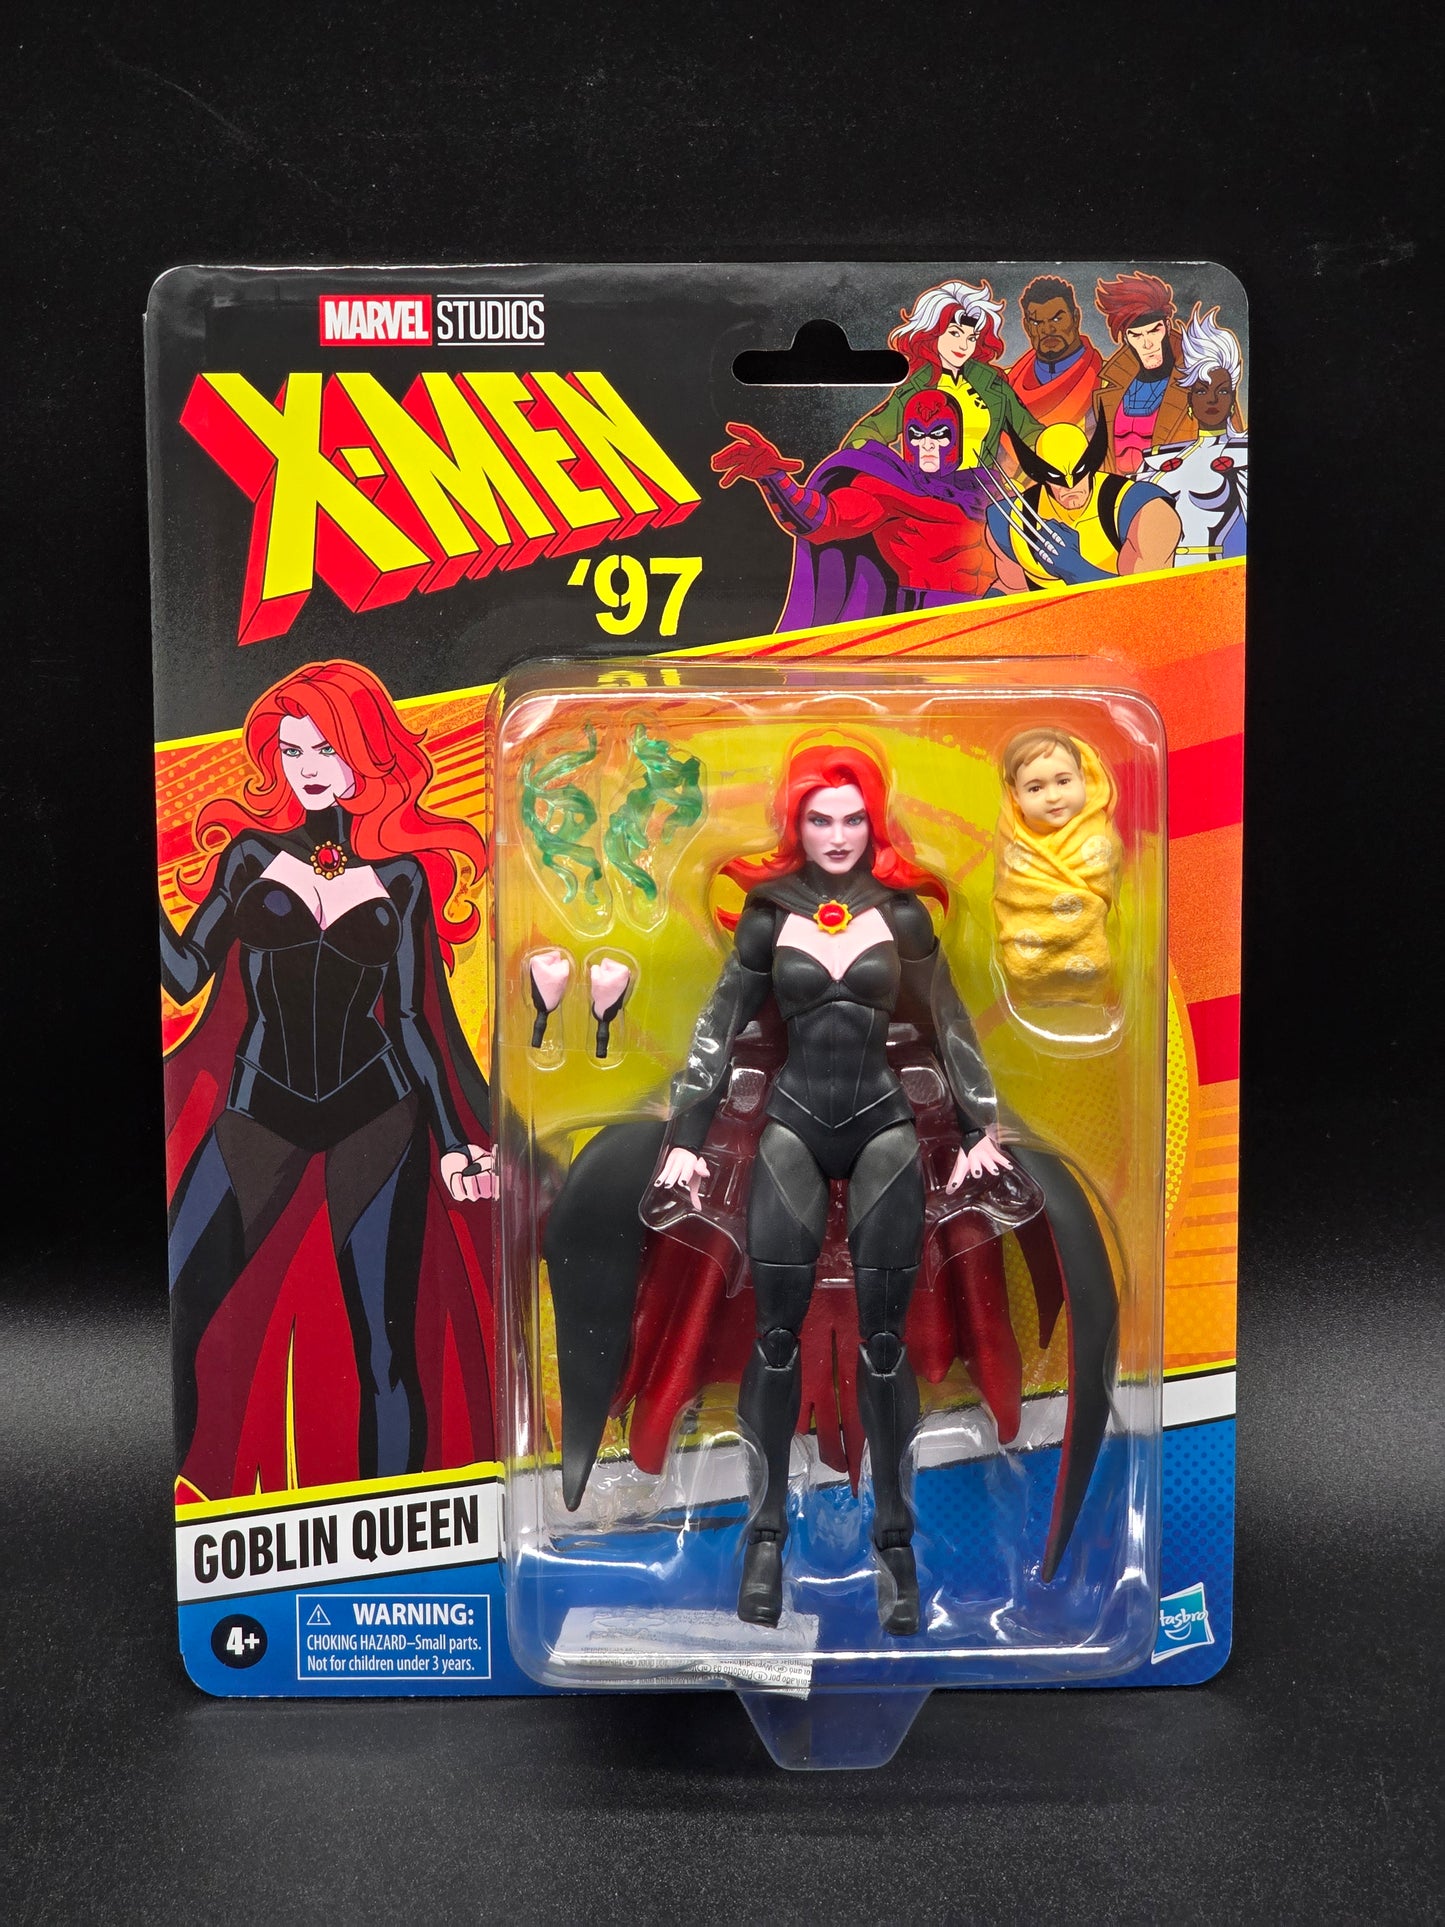 Goblin Queen X-Men '97 Marvel Legends wave 2